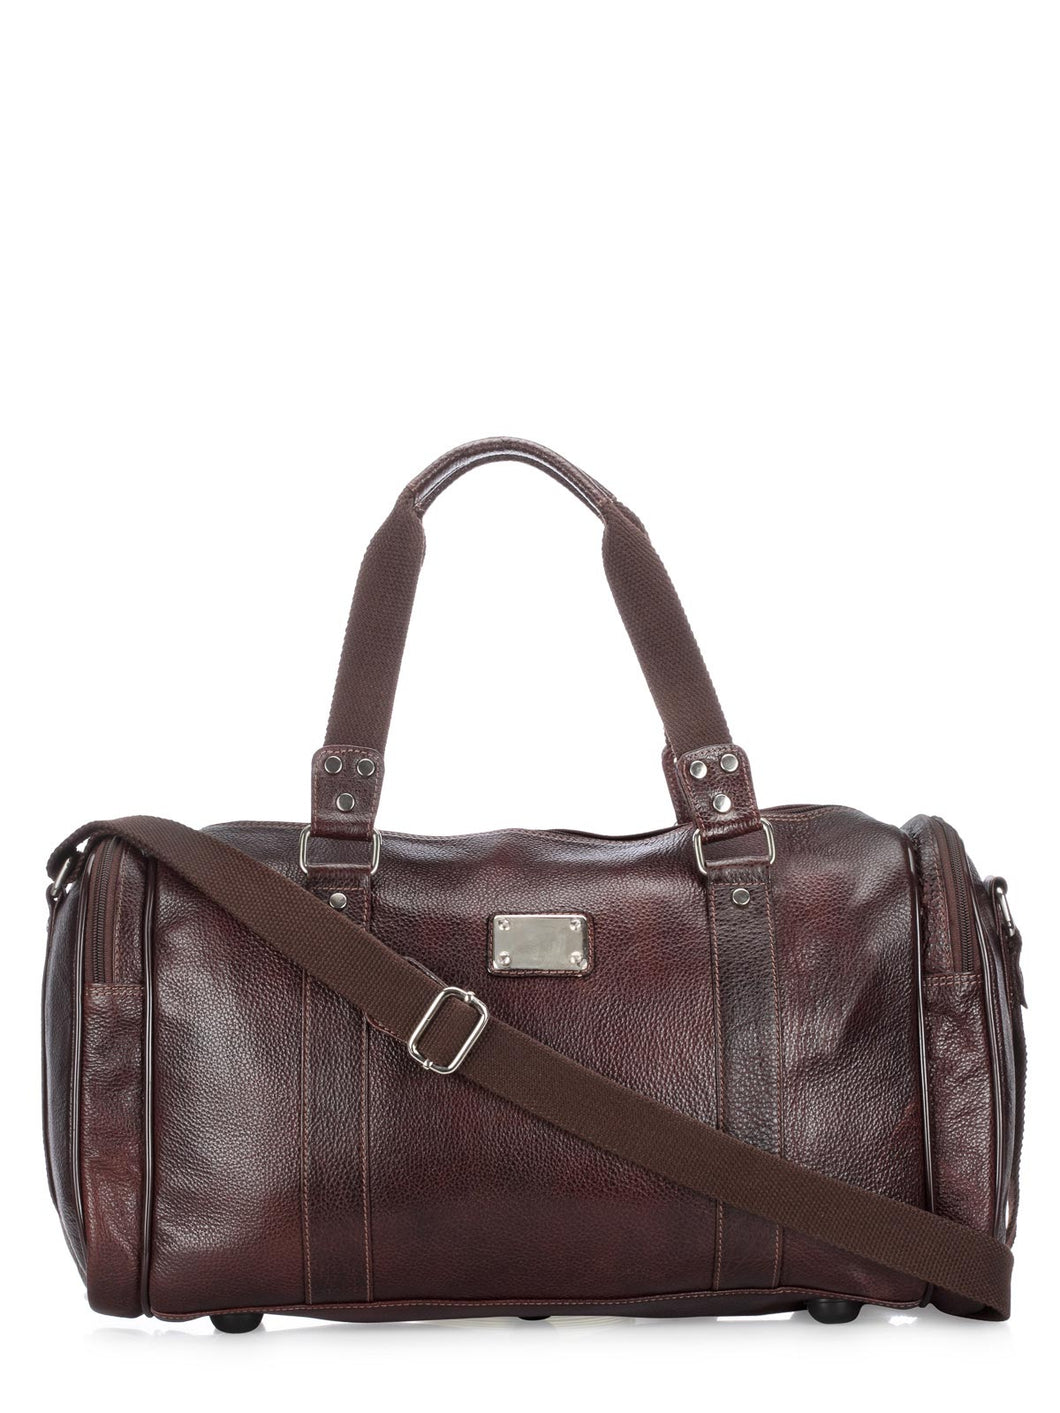 Teakwood Genuine Leather Travel Bag